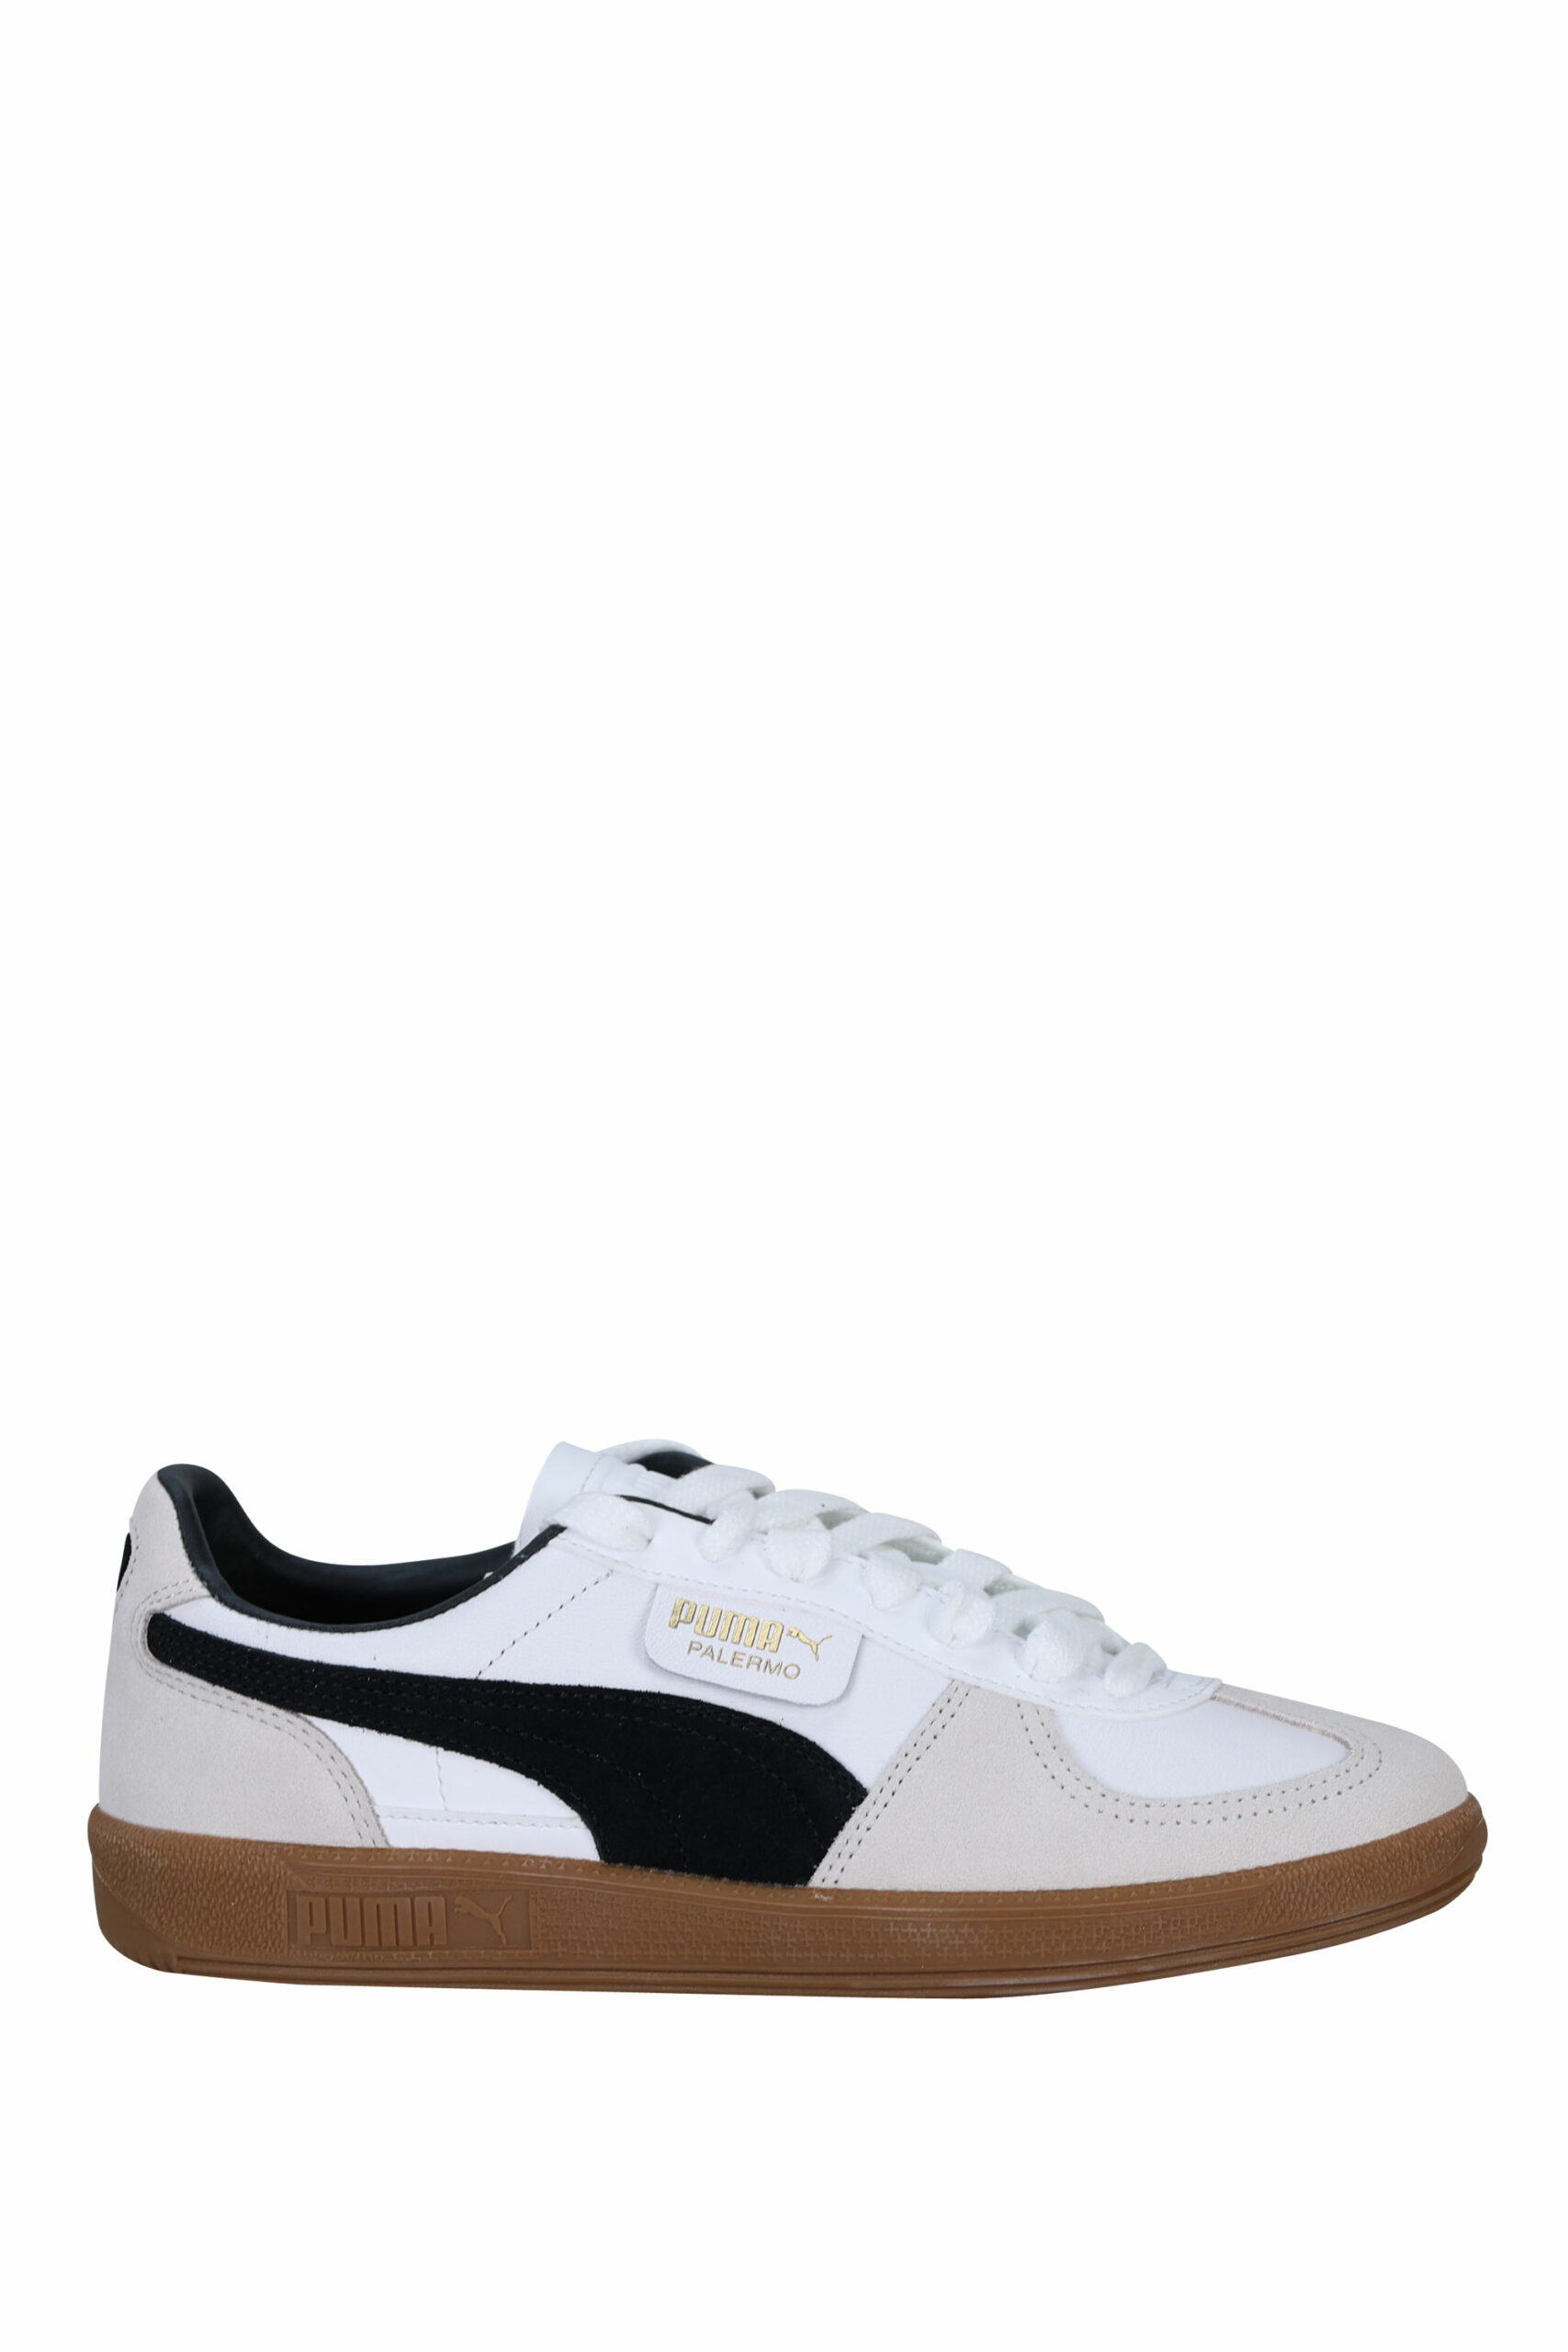 Zapatillas blancas logo dorado Puma – Talla 37.5 – Querido Hábito